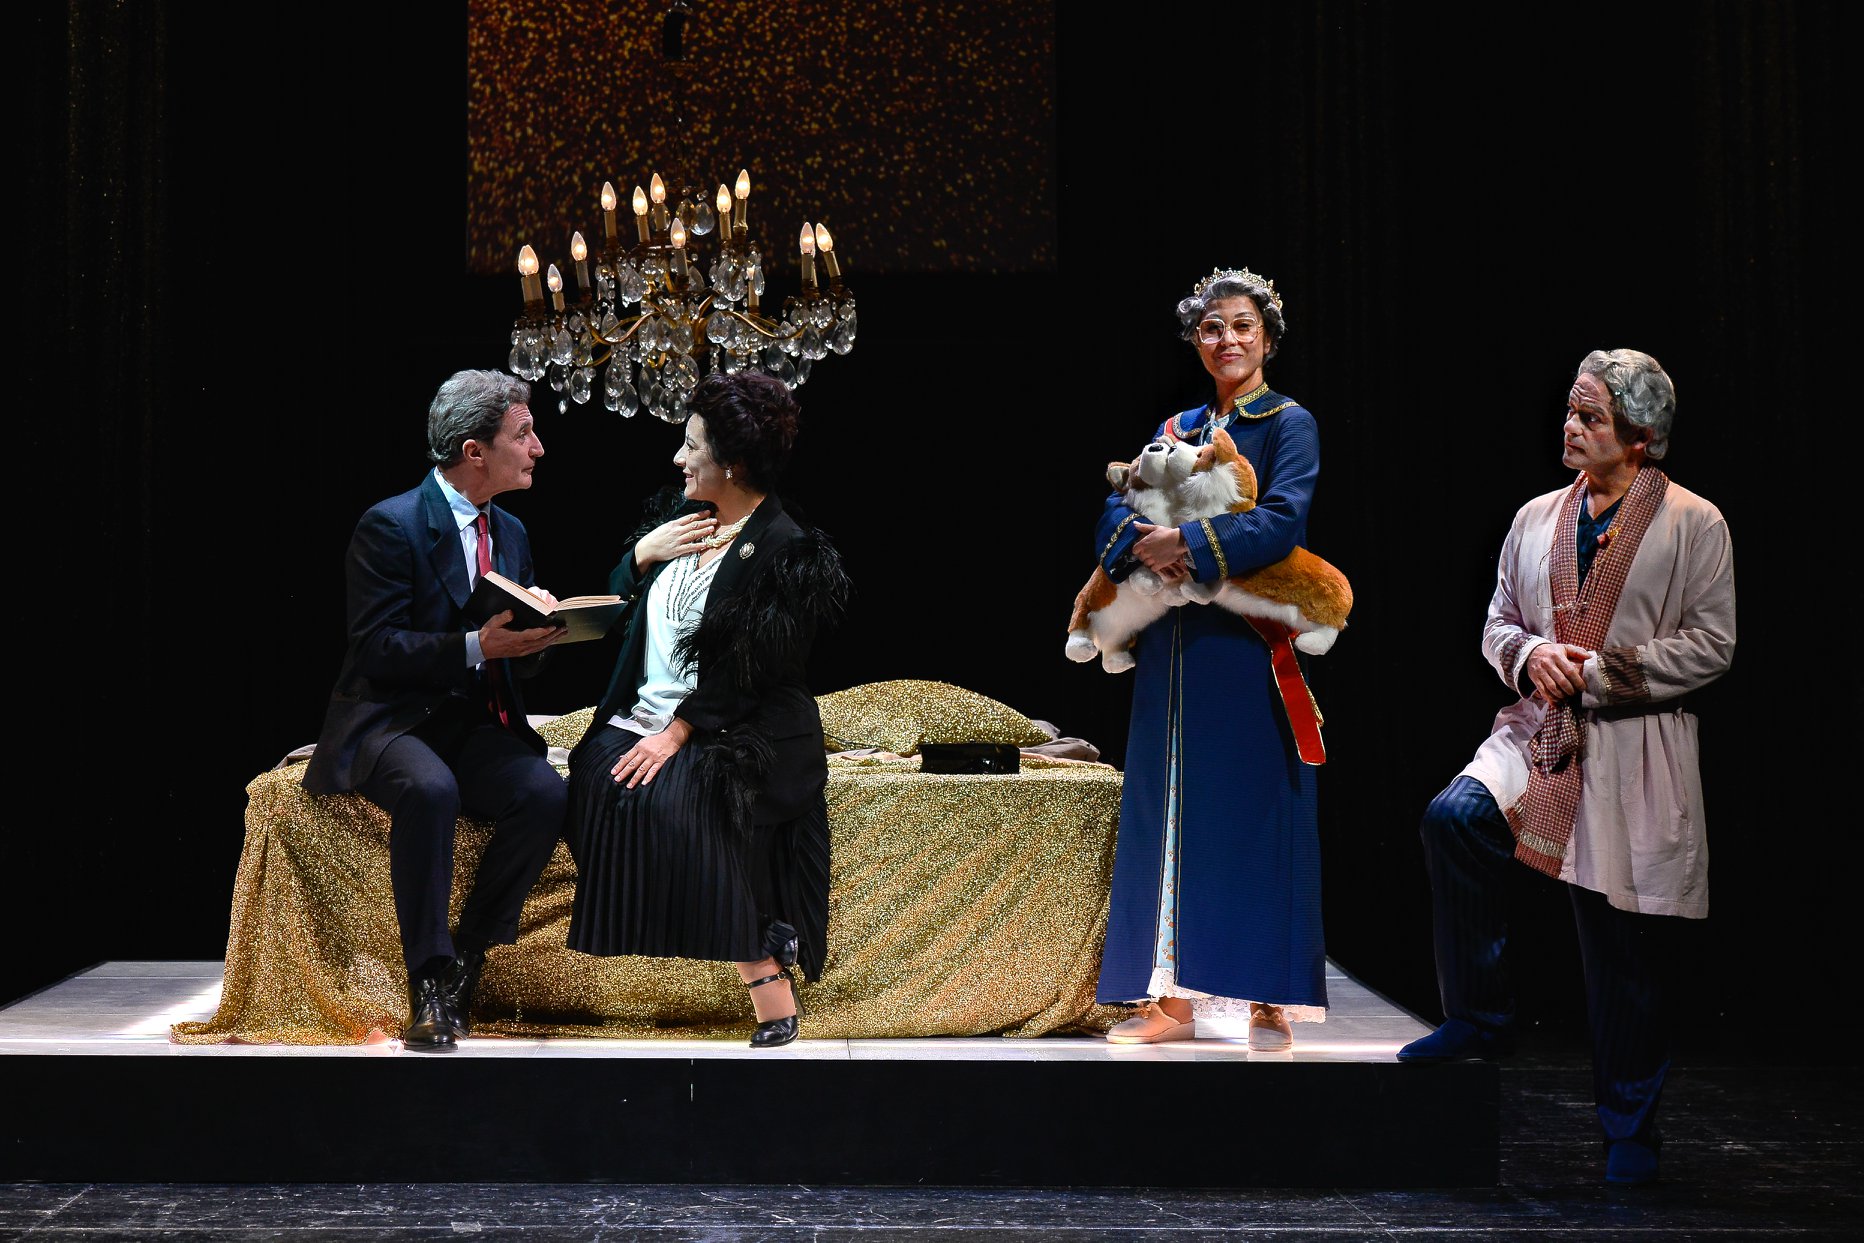 Teatro. Torna al Sannazaro di Napoli, ‘Una tragedia reale’ di Patroni Griffi diretto da Saponaro